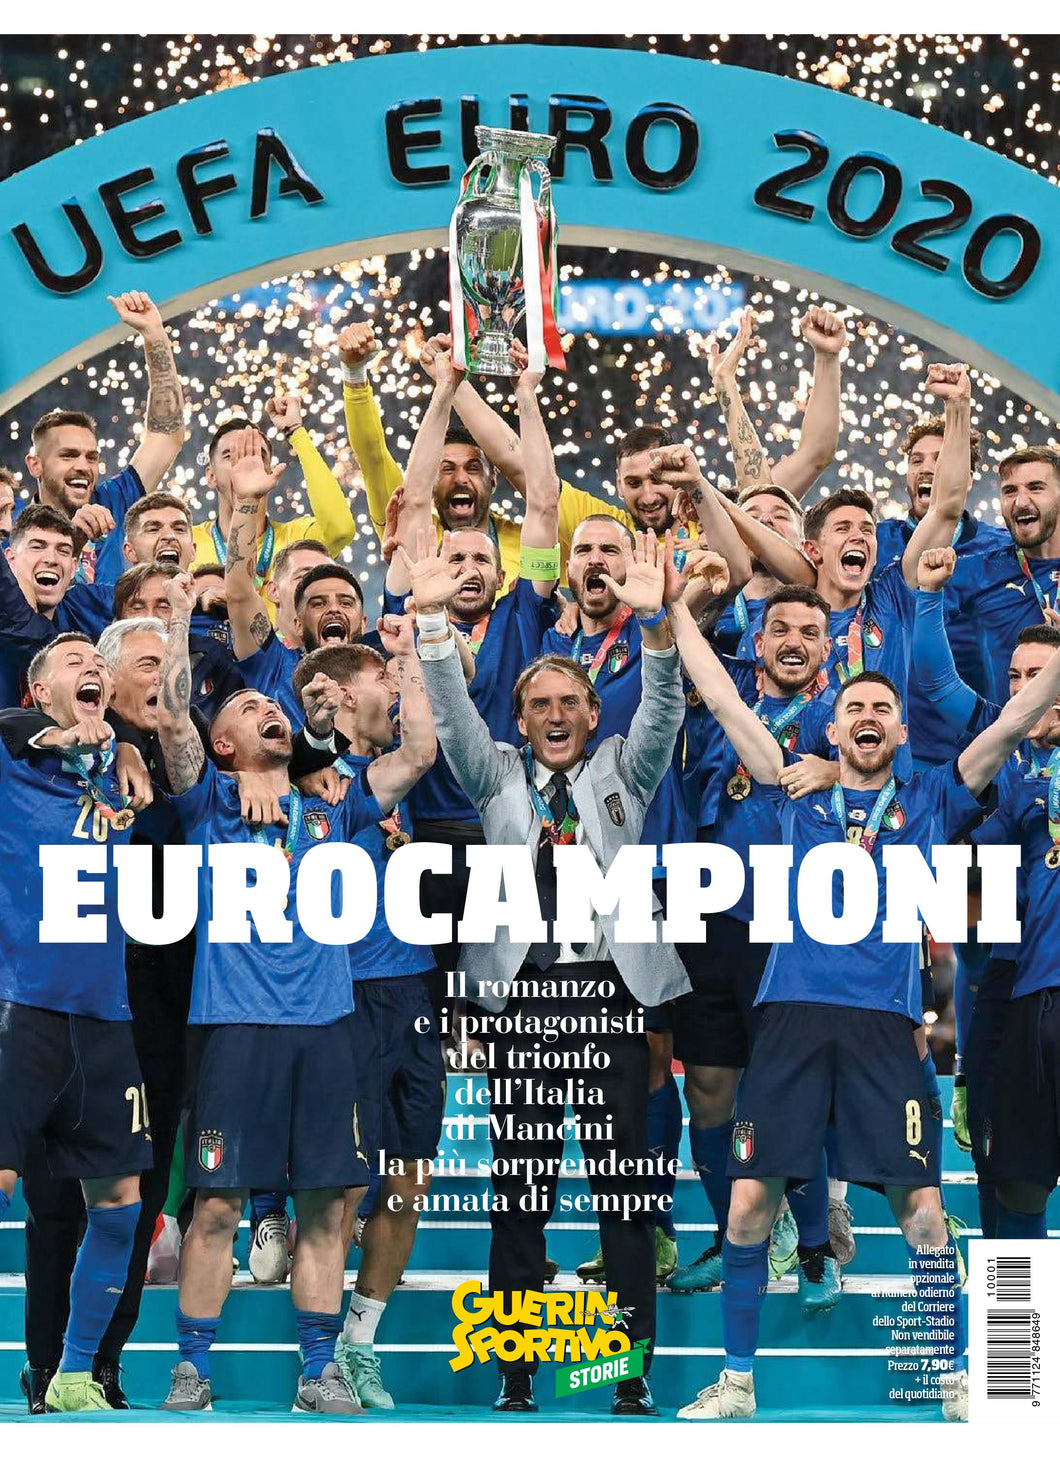 EURO2020: Eurocampioni, il Trionfo dell'Italia